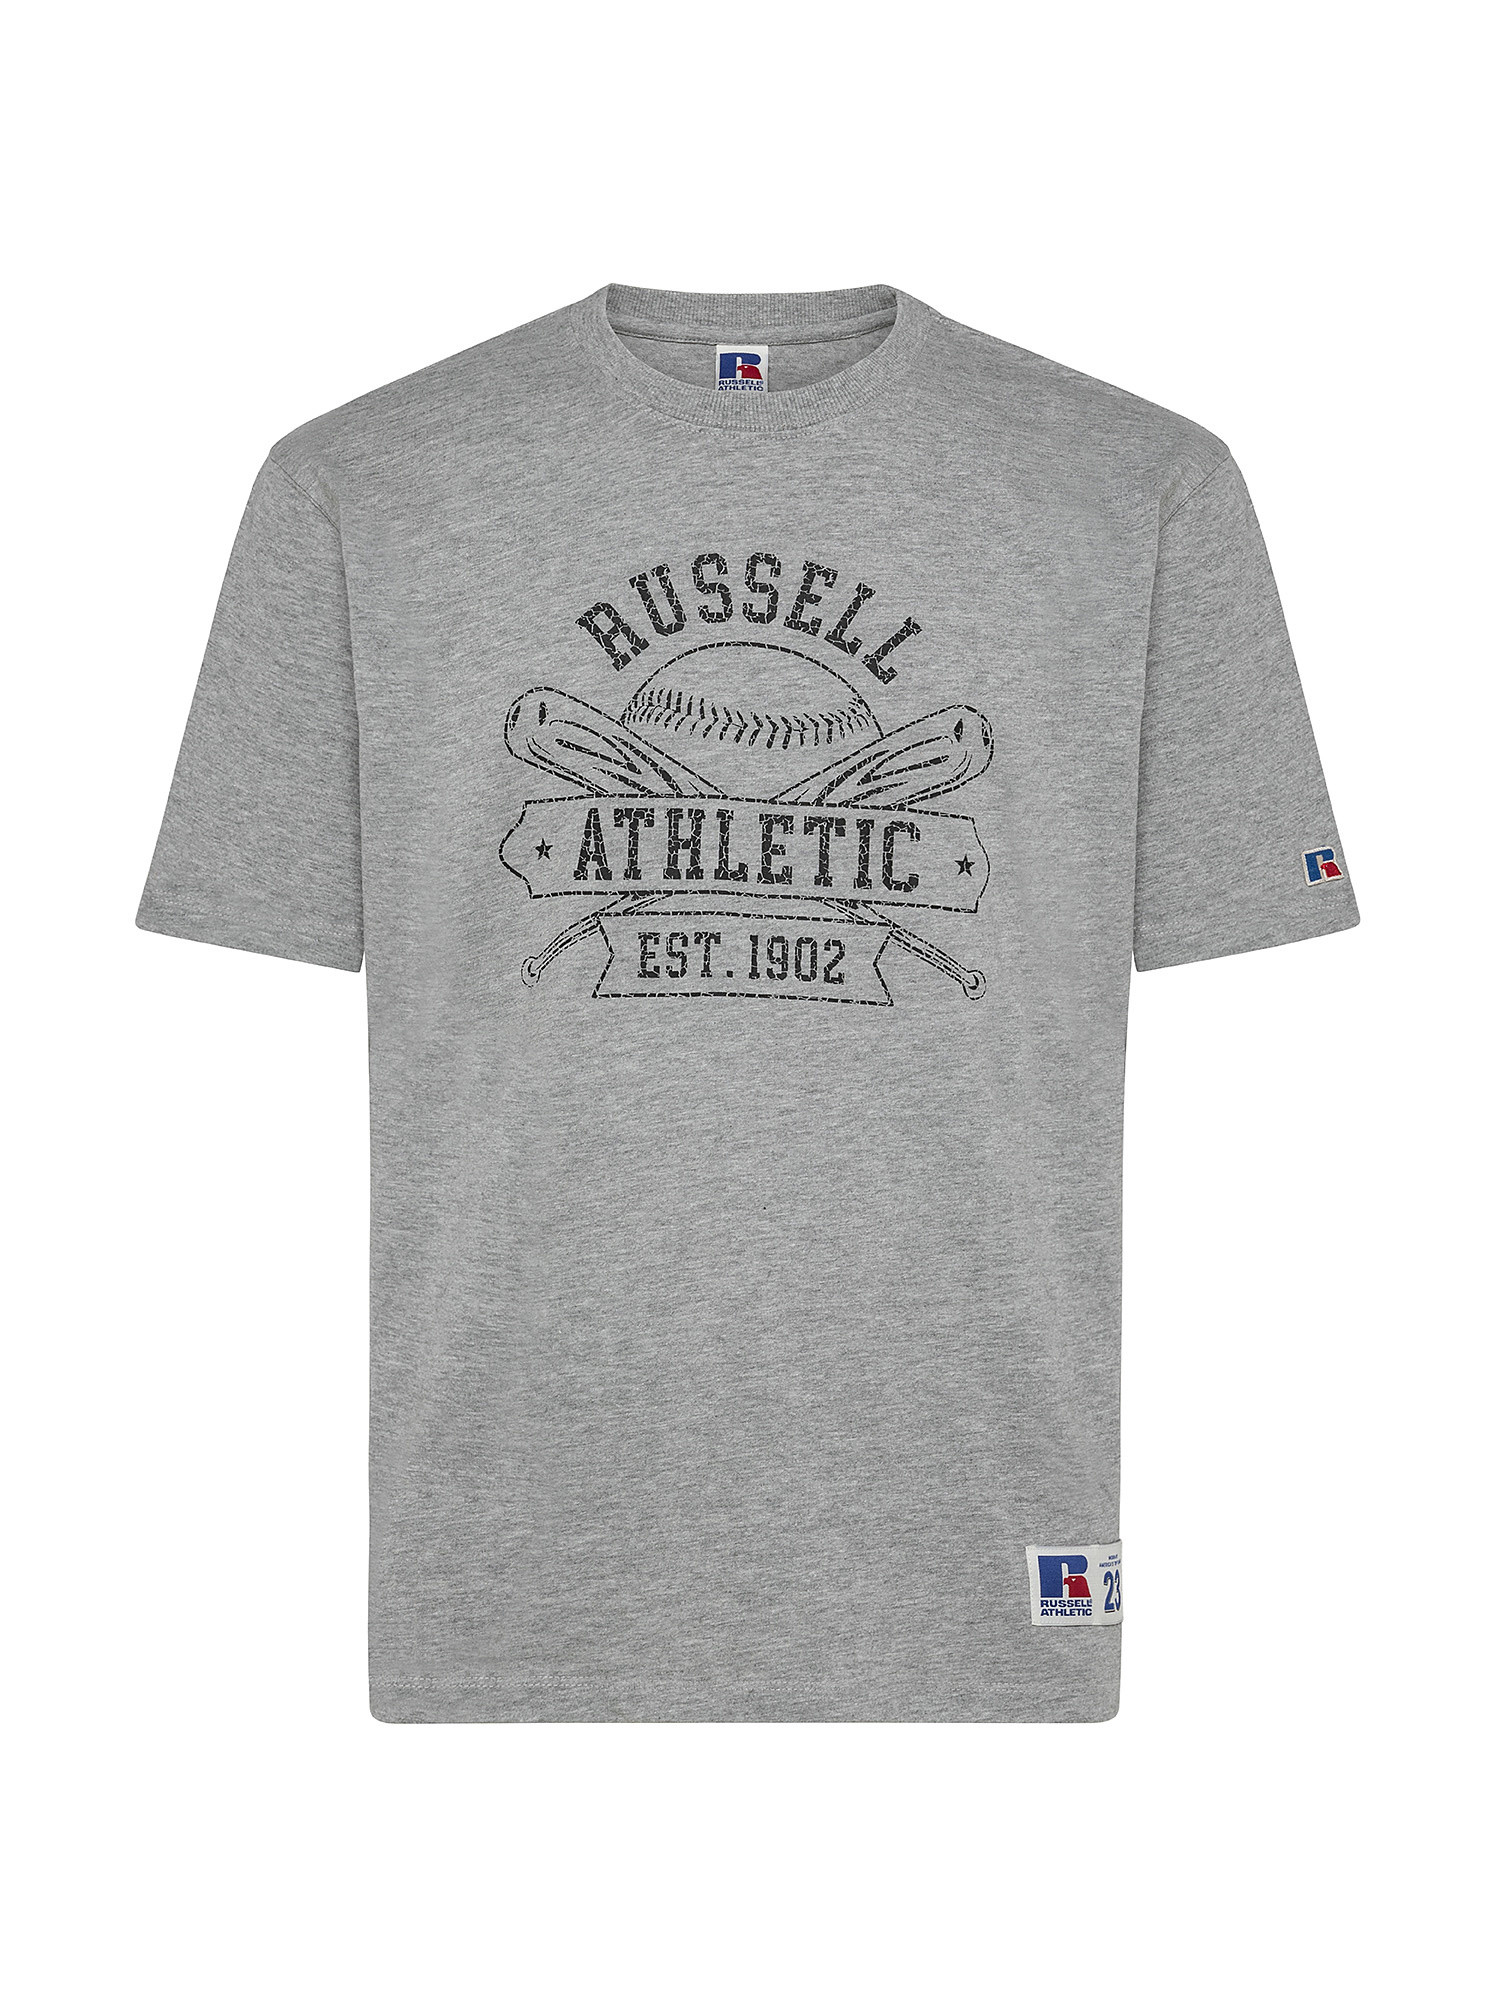 Tony Baseball T-Shirt, Grey, large image number 0